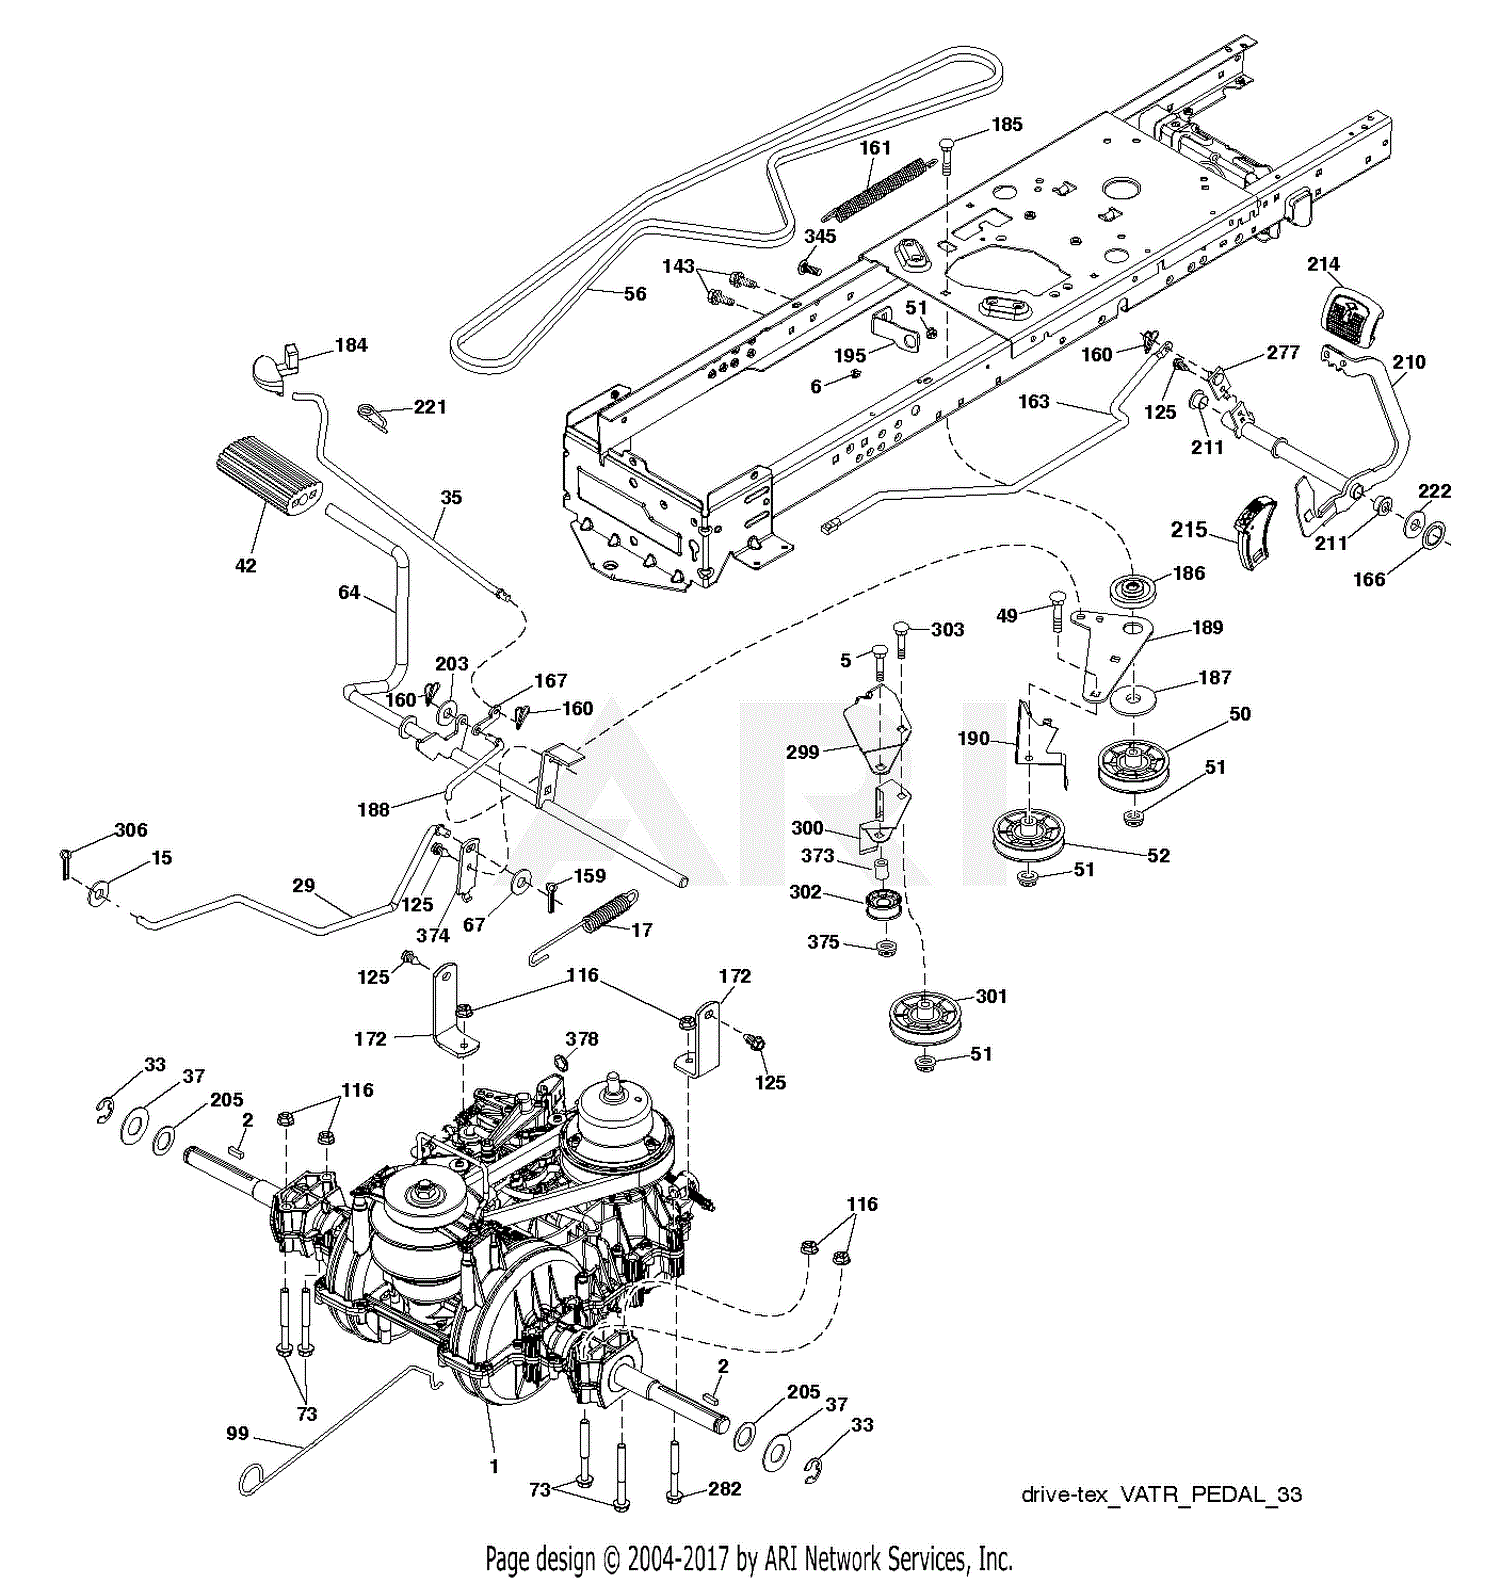 Poulan PB185A42 96042016600 (201409) Parts Diagram for DRIVE